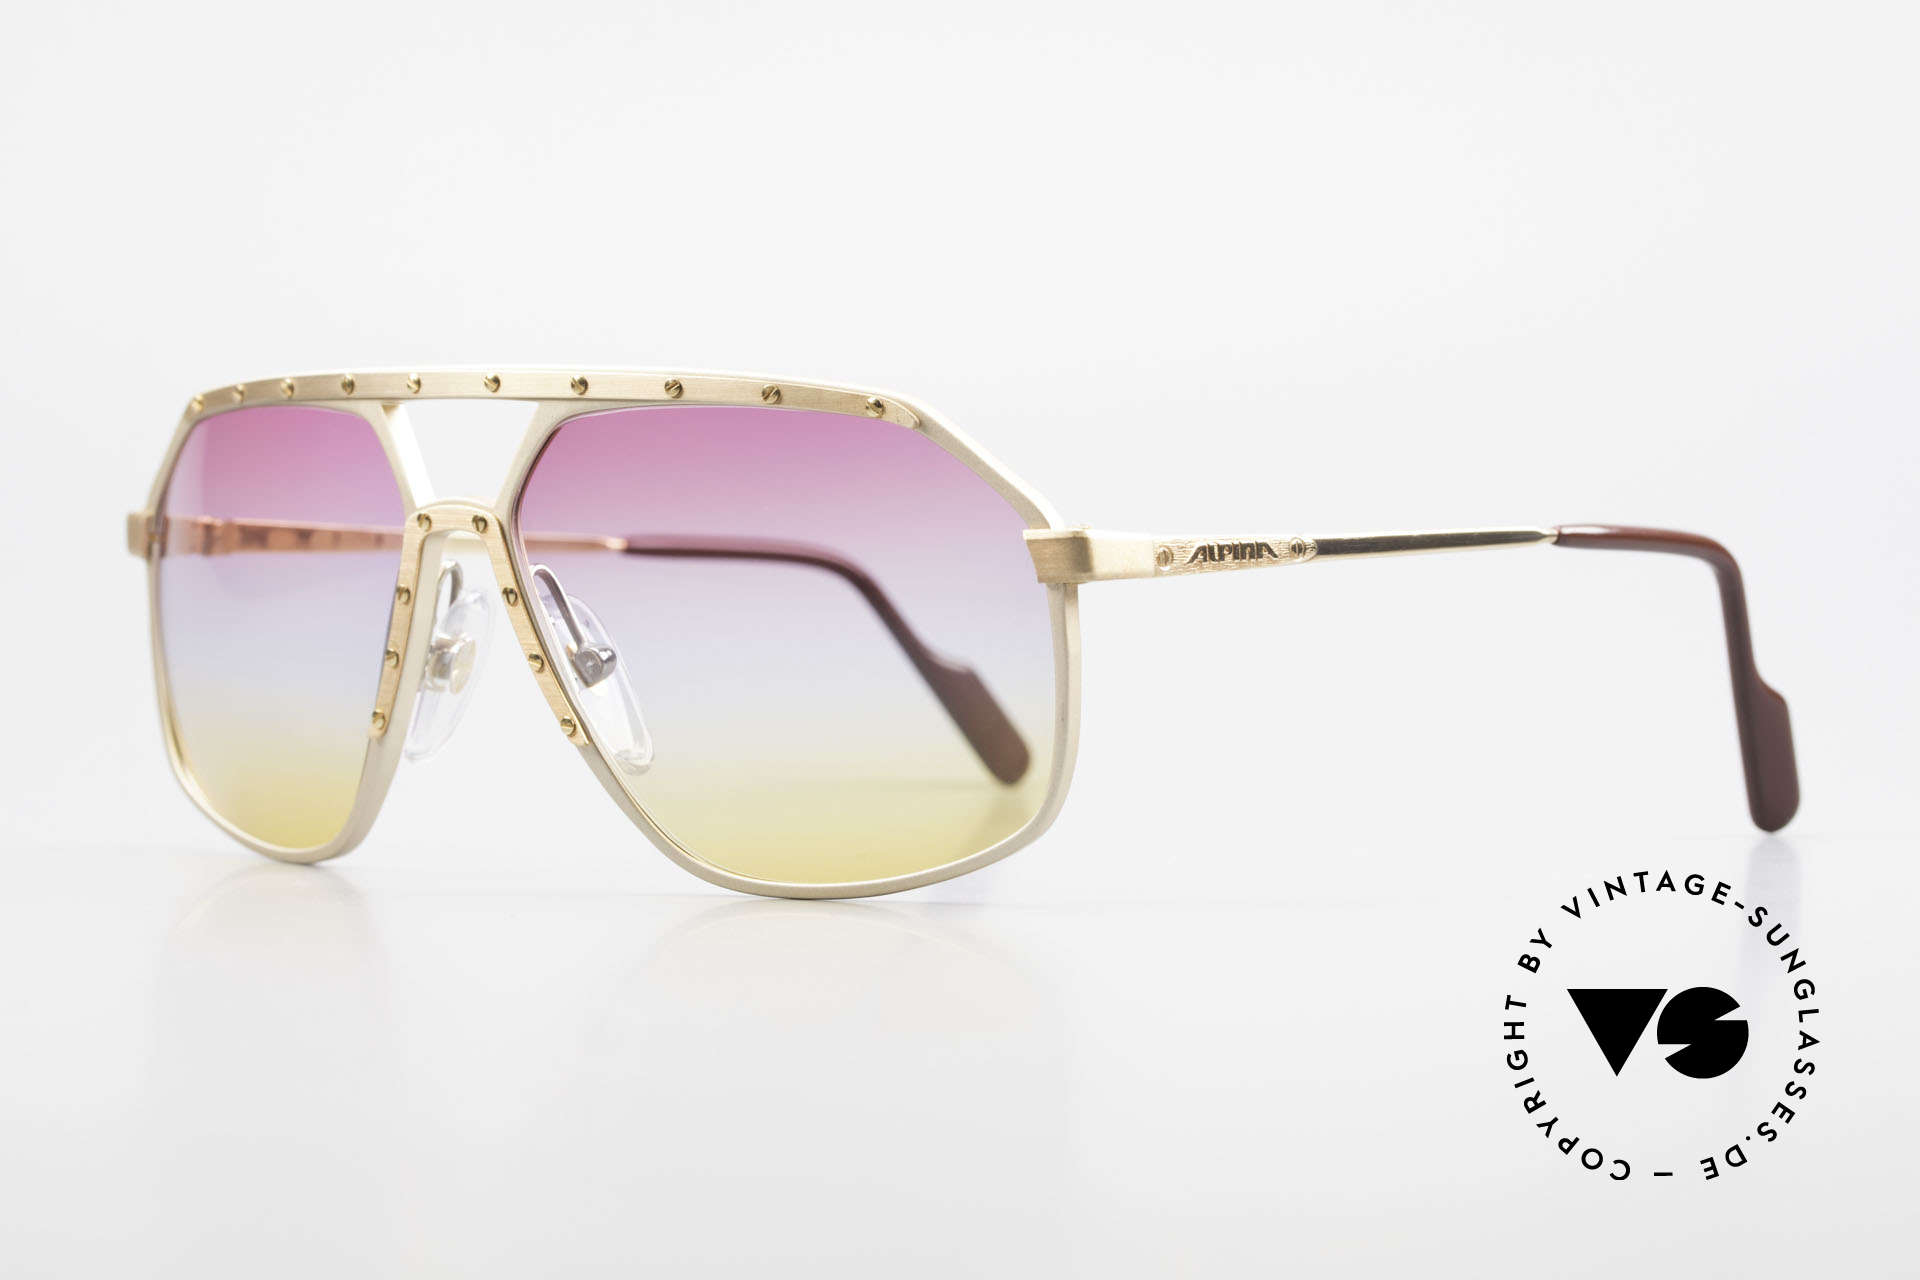 Alpina M6 80er Brillenklassiker Sunset, weltberühmt für sein Schrauben-Design; Gr. 60-14, Passend für Herren und Damen